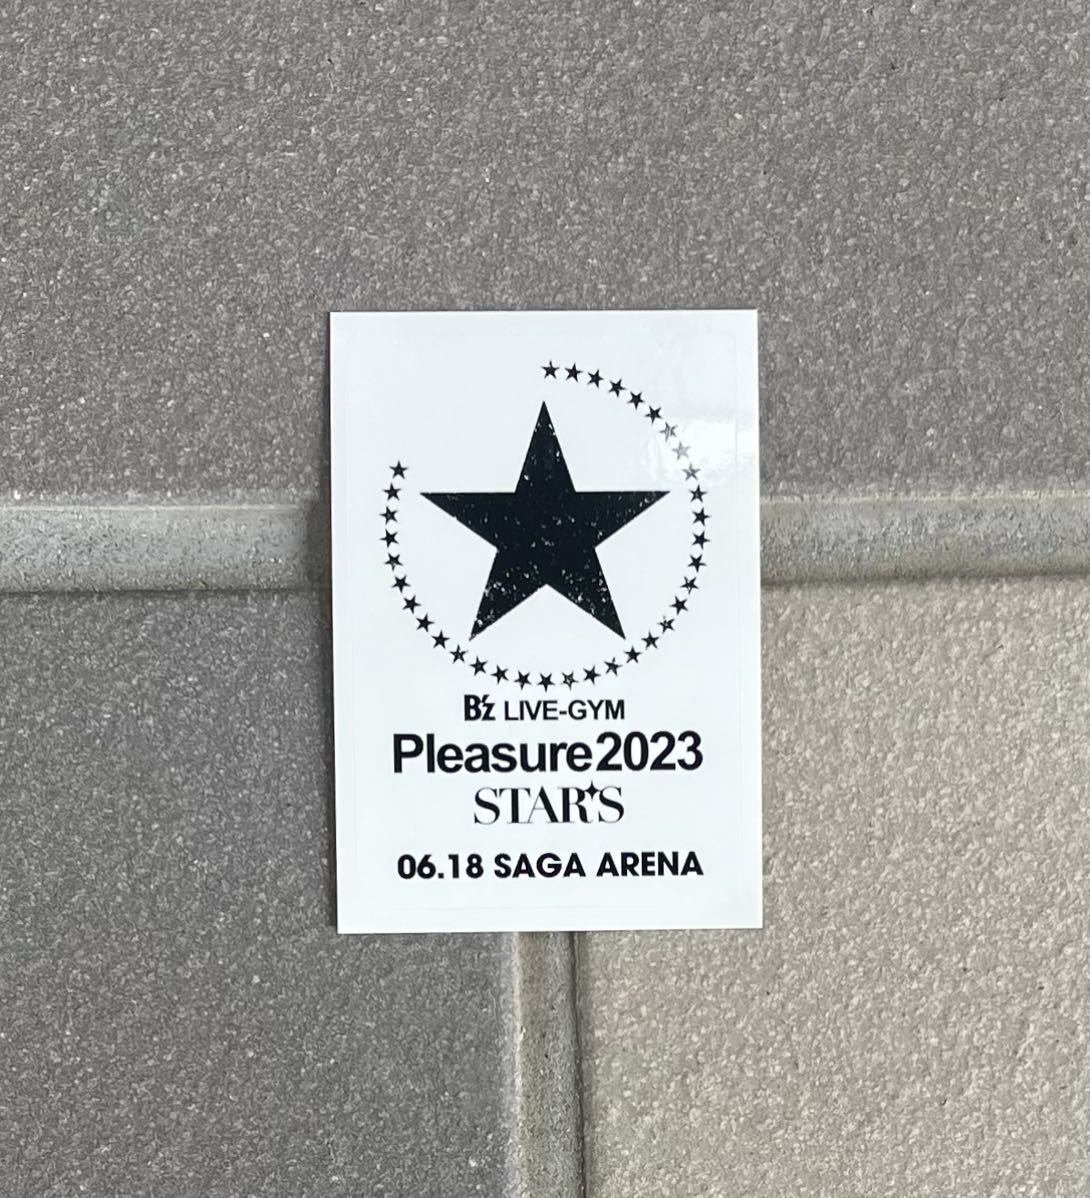 即決! B'z LIVE-GYM Pleasure 2023 “STARS” ☆ 非売品 会場限定 ツアー